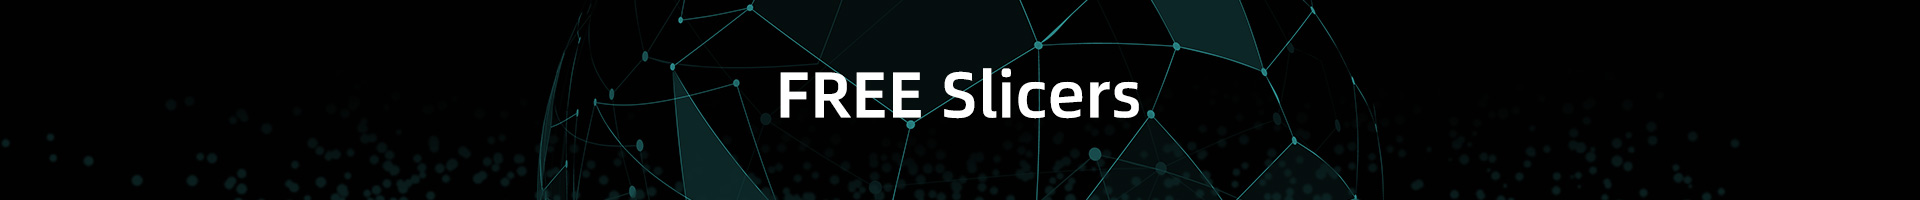 Free Slicers